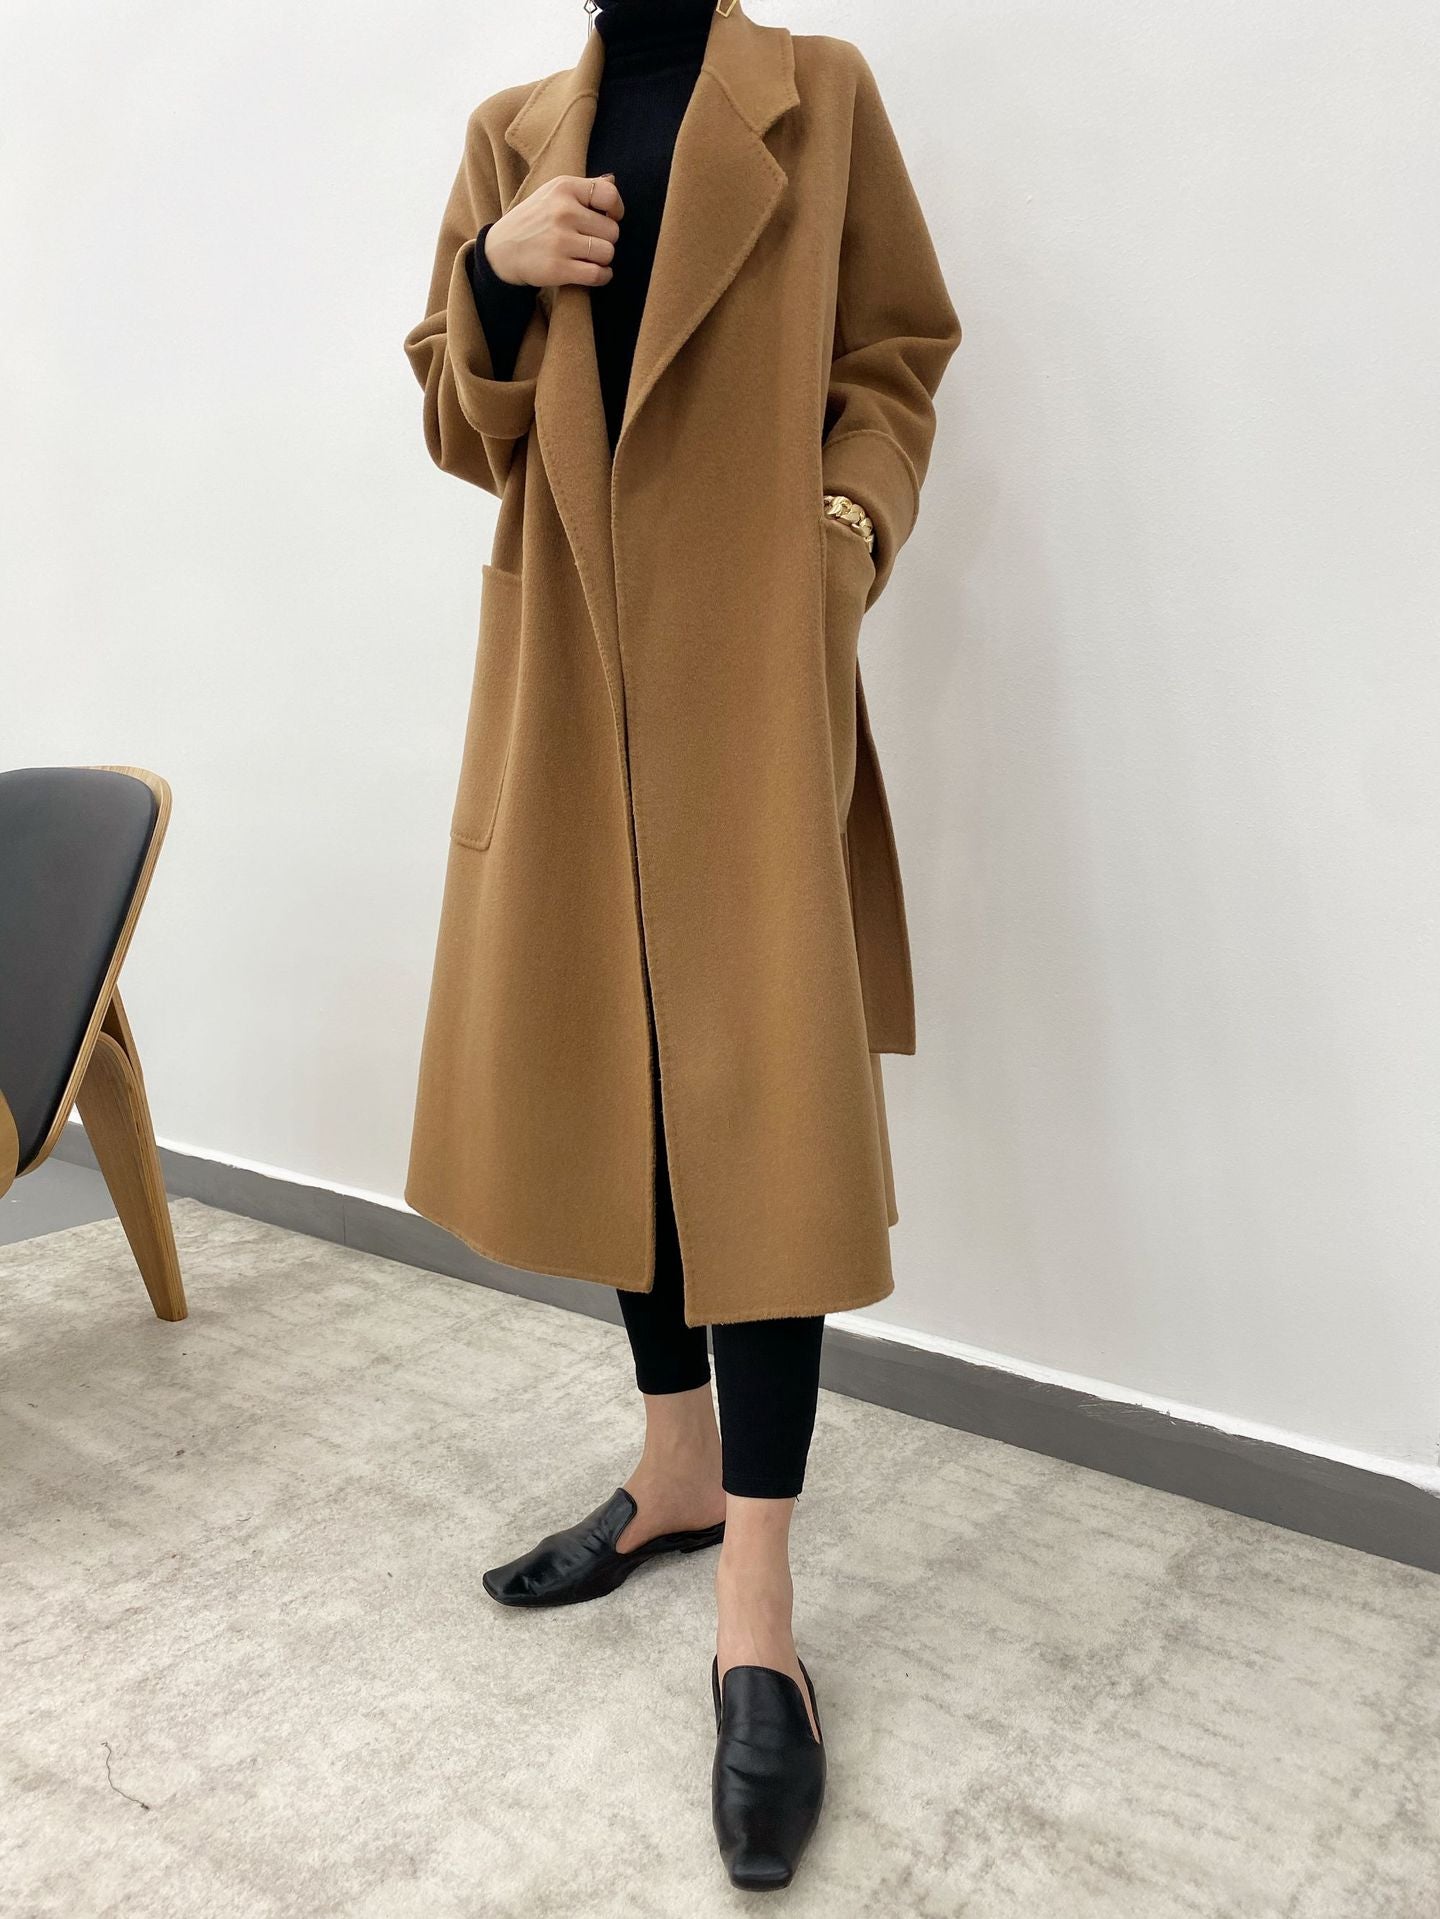 Luxury Designed Winter Woolen Overcoats for Women